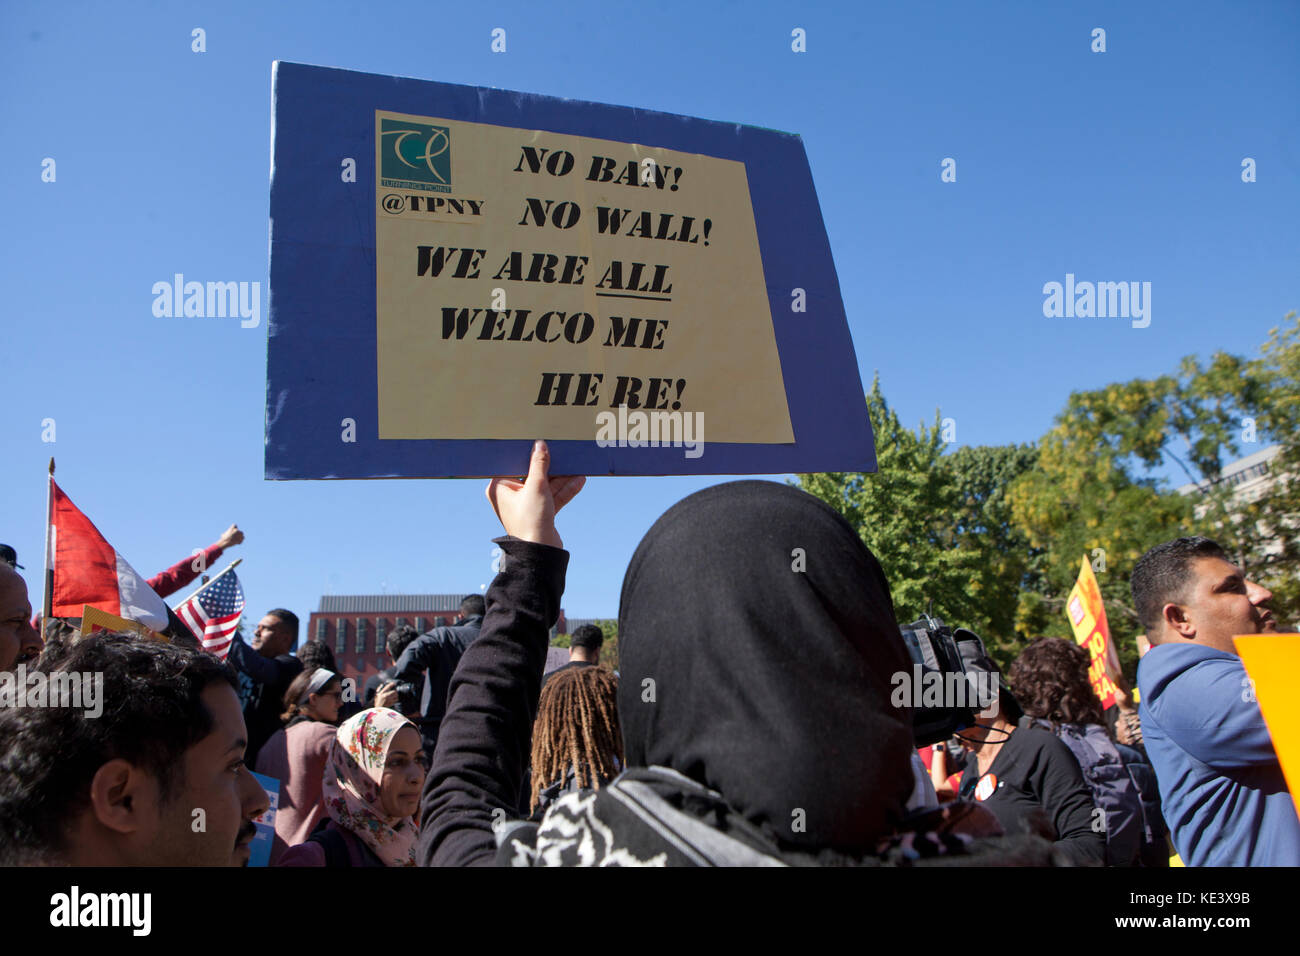 Mercoledì, Ottobre 18th, 2017, Washington DC USA: centinaia di musulmani americani e sostenitori protesta Trump dell amministrazione di tentativi di 'Muslim divieto' a Lafayette Square, appena al di fuori della Casa Bianca. Credito: B Christopher/Alamy Live News Foto Stock